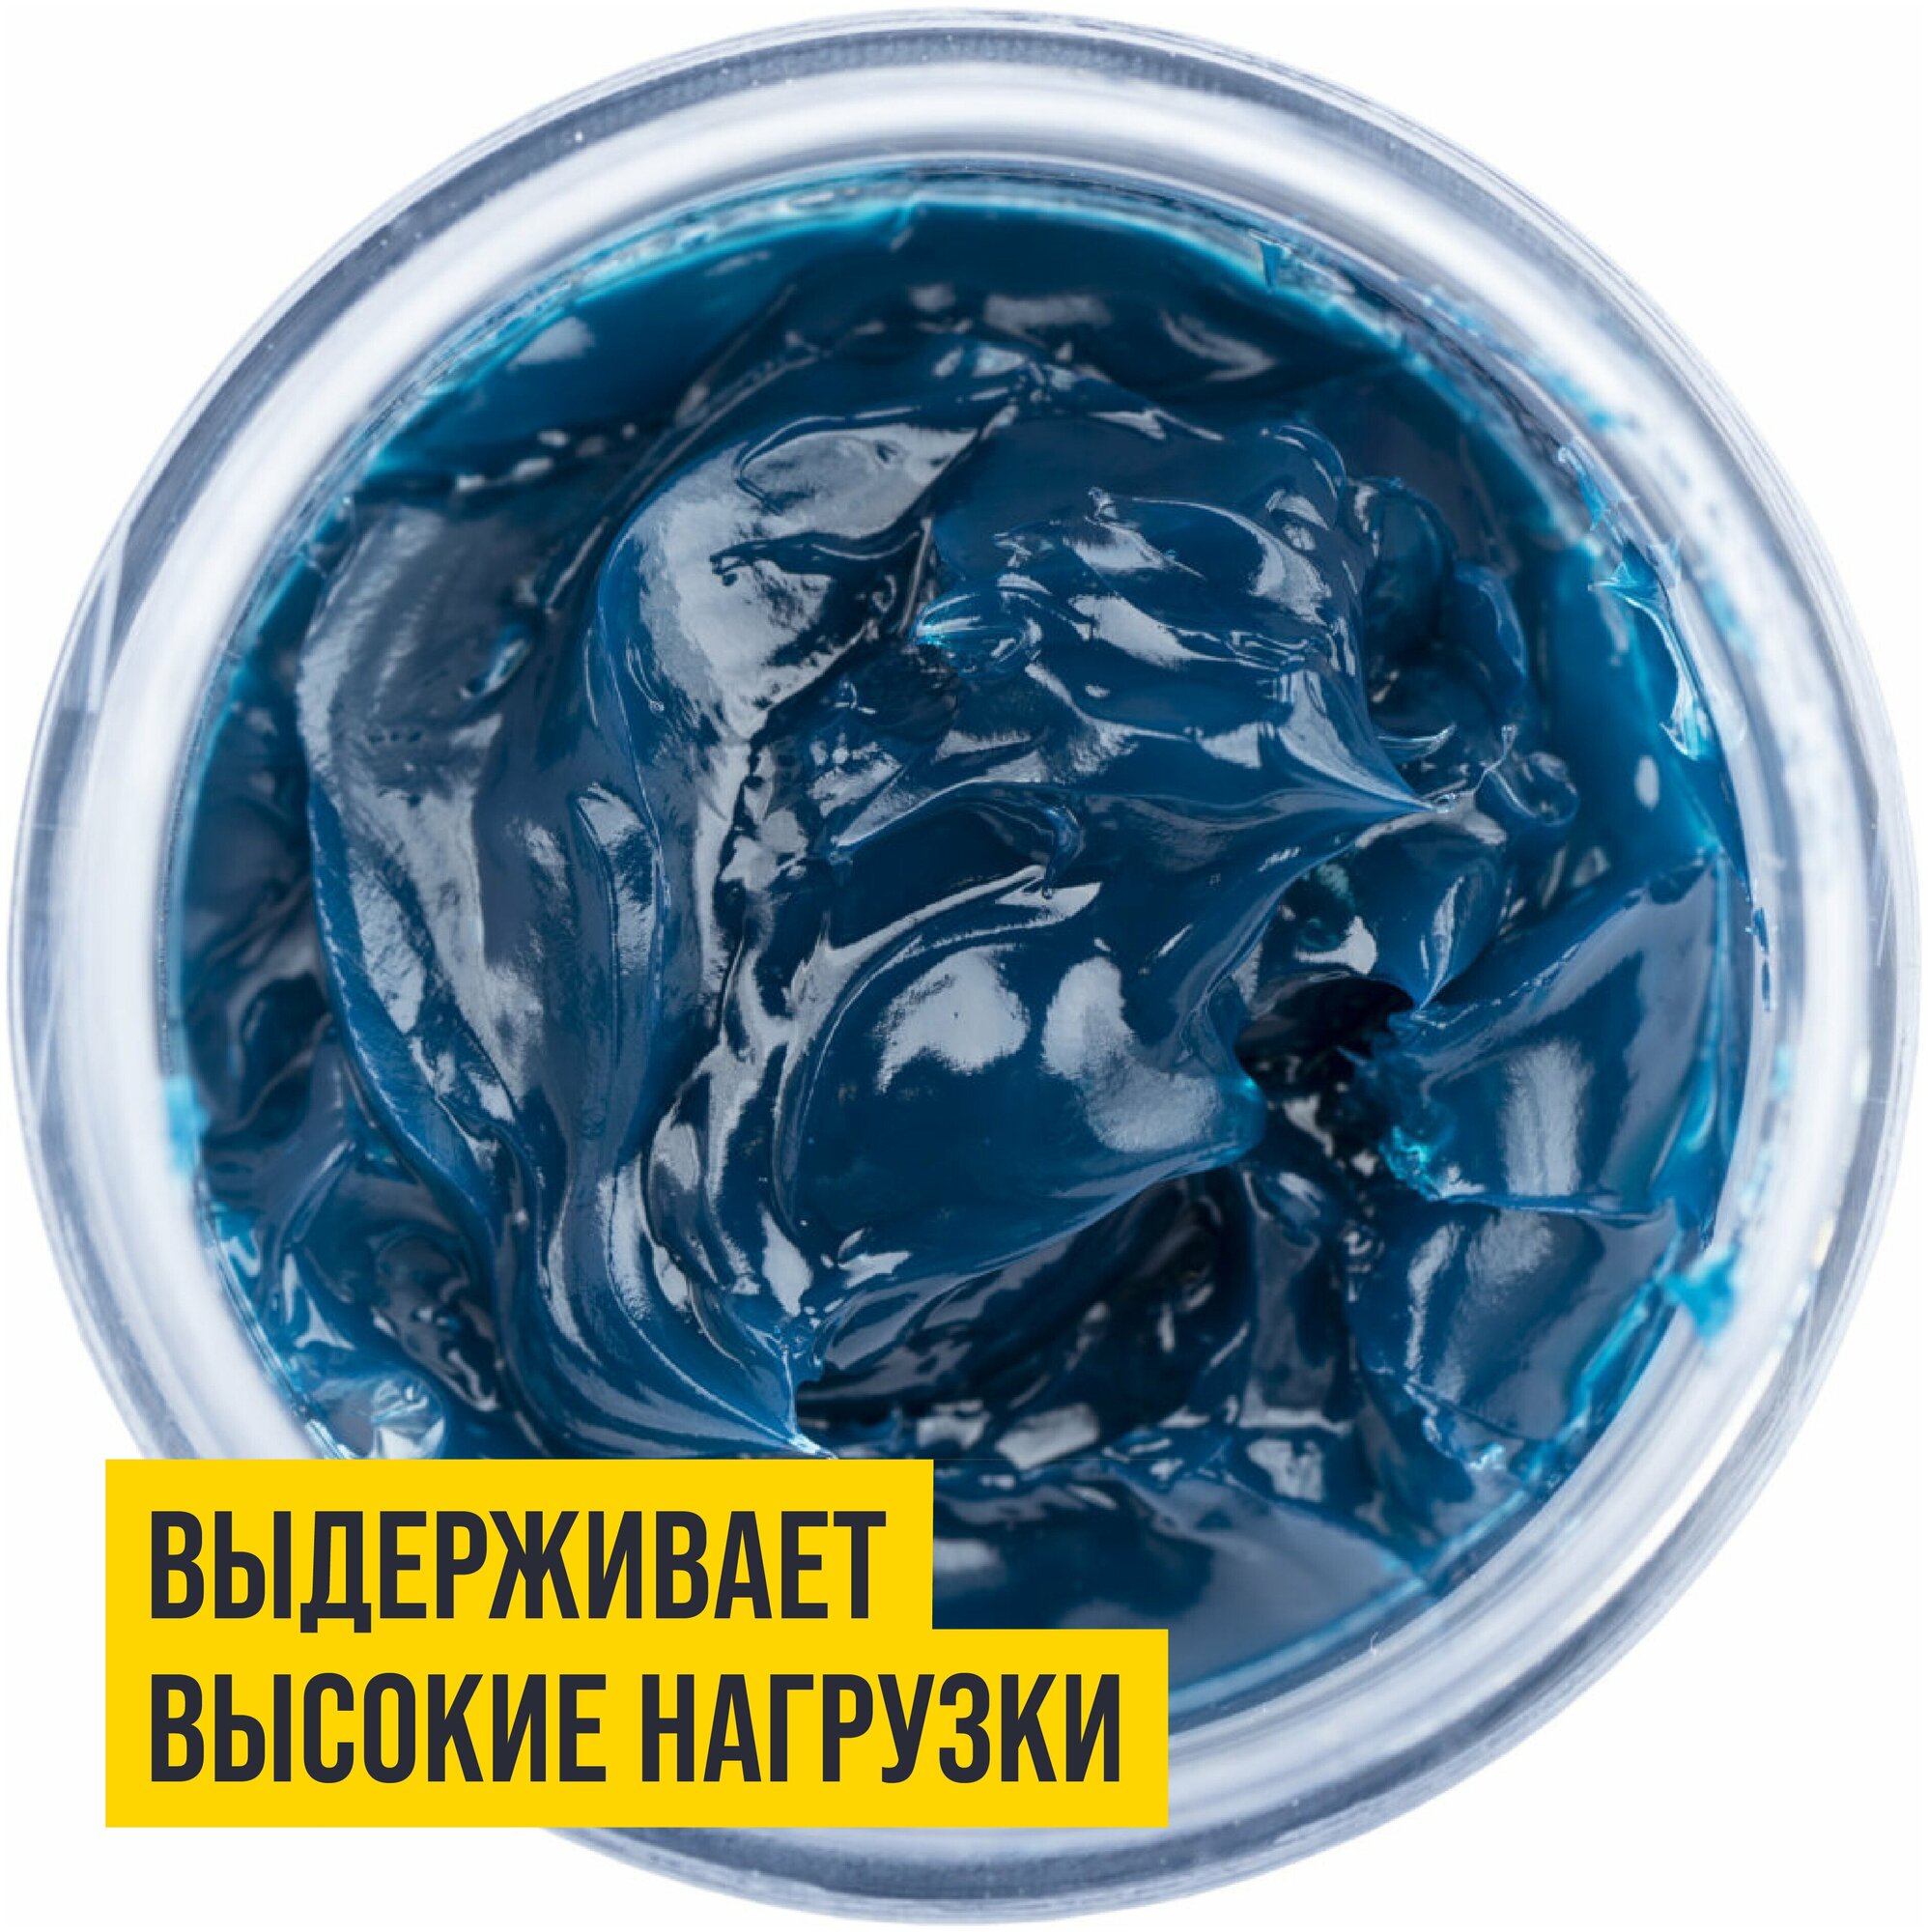 Смазка синяя высокотемпературная МС 1510 BLUE литиевая комплексная 80 гр стик-пакет, ВМПАВТО